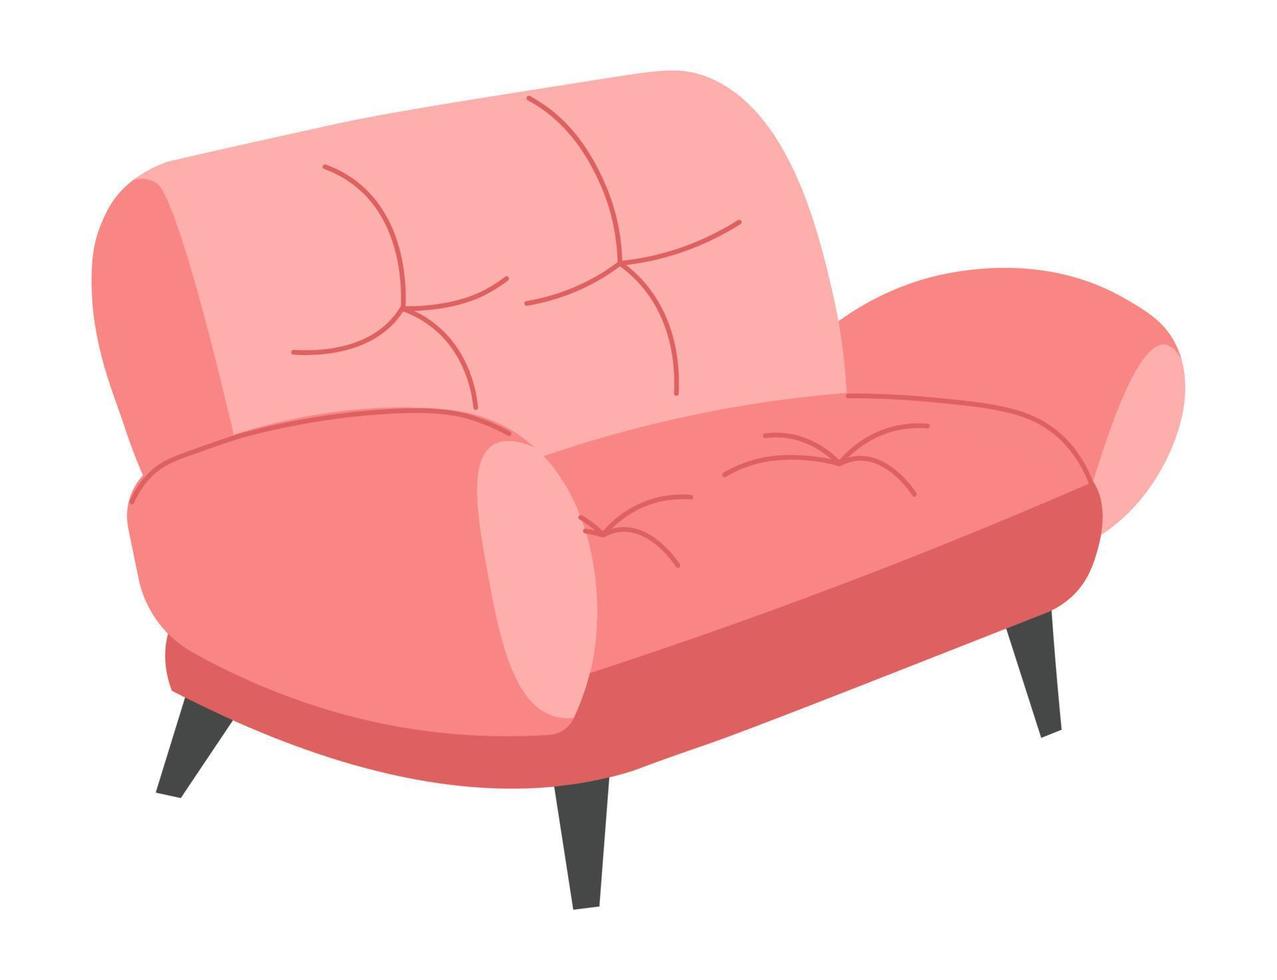 stilvolles trendiges sofa, minimalistisches glamouröses interieur vektor